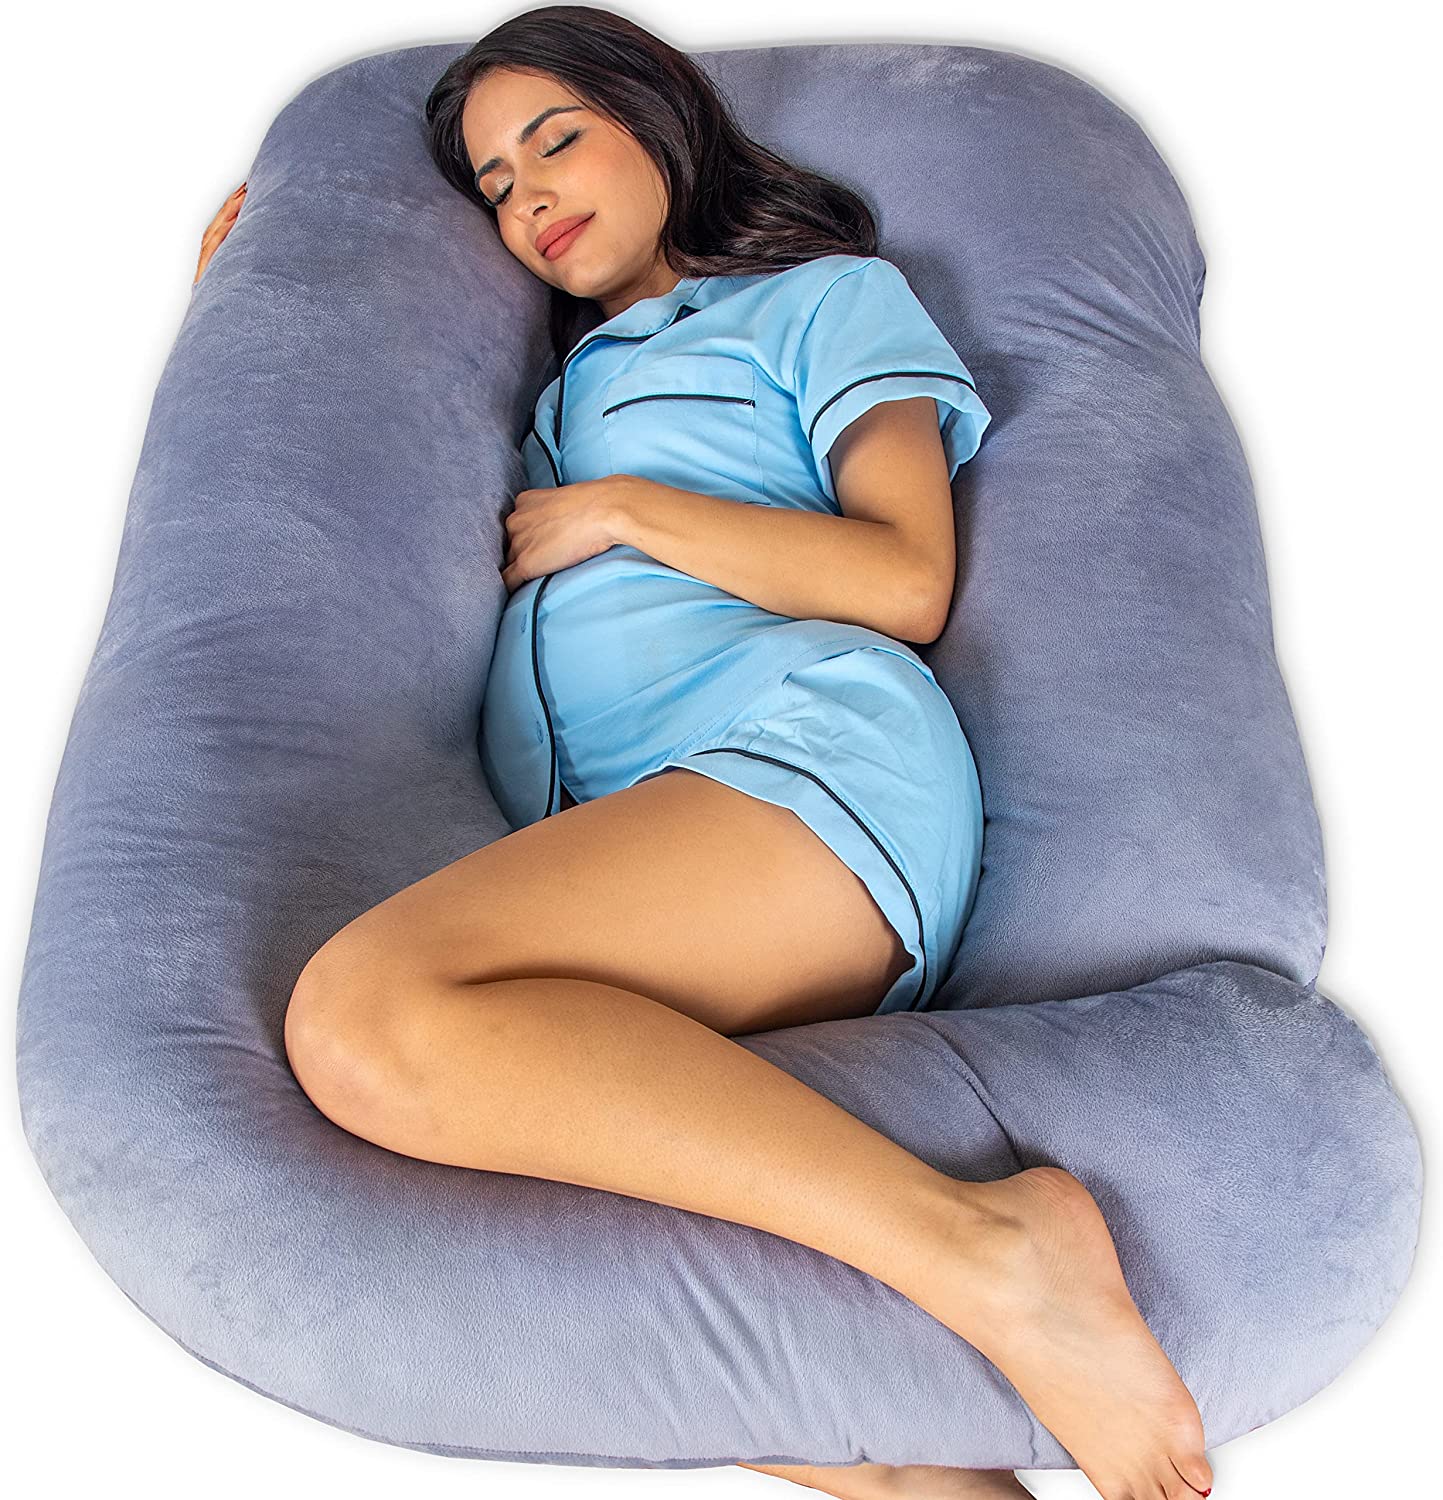 Pregnancy Pillow Full Body Maternity